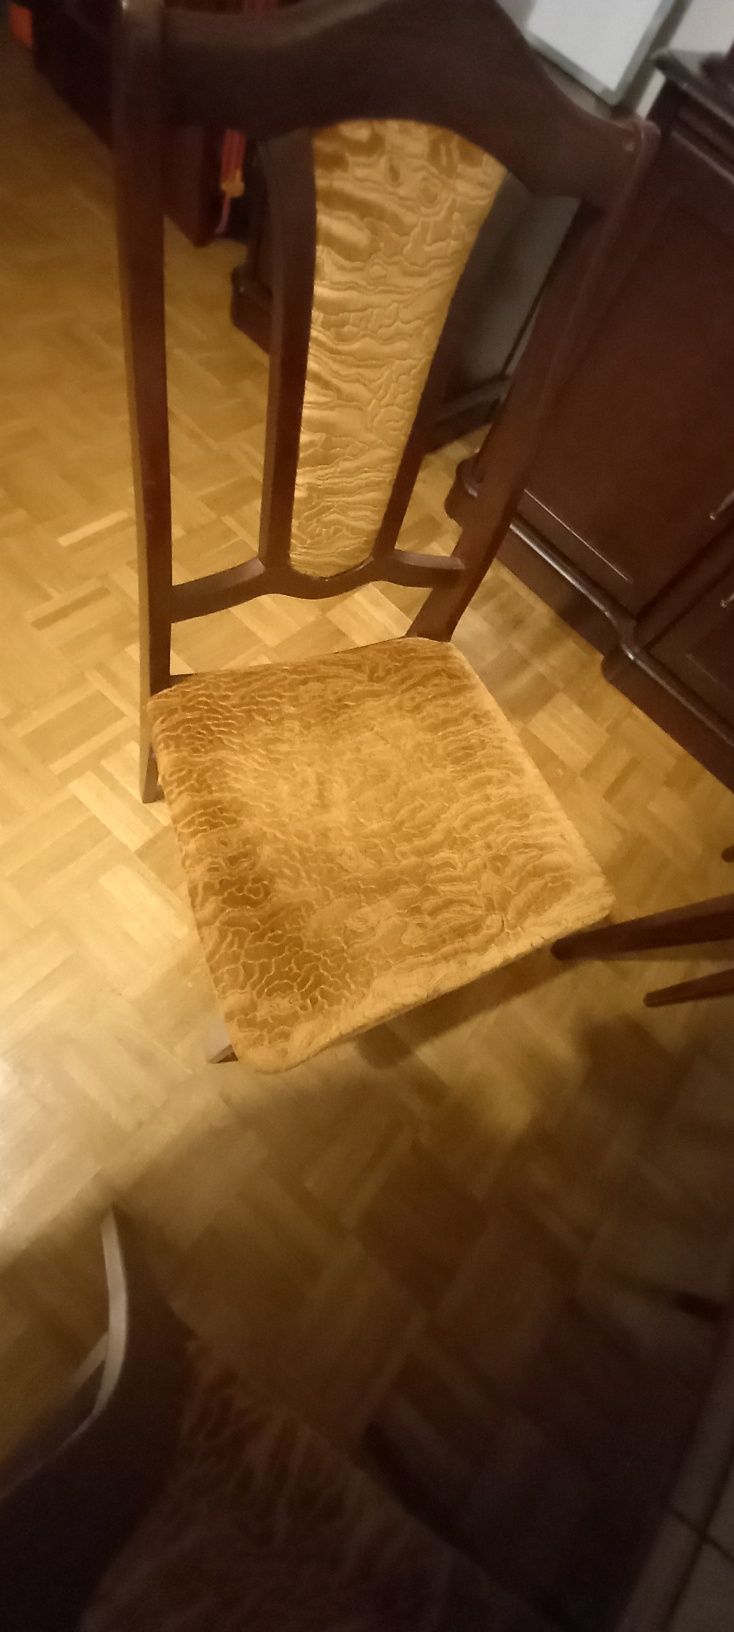 Stół drewniany rozkładany + 6 krzeseł komplet